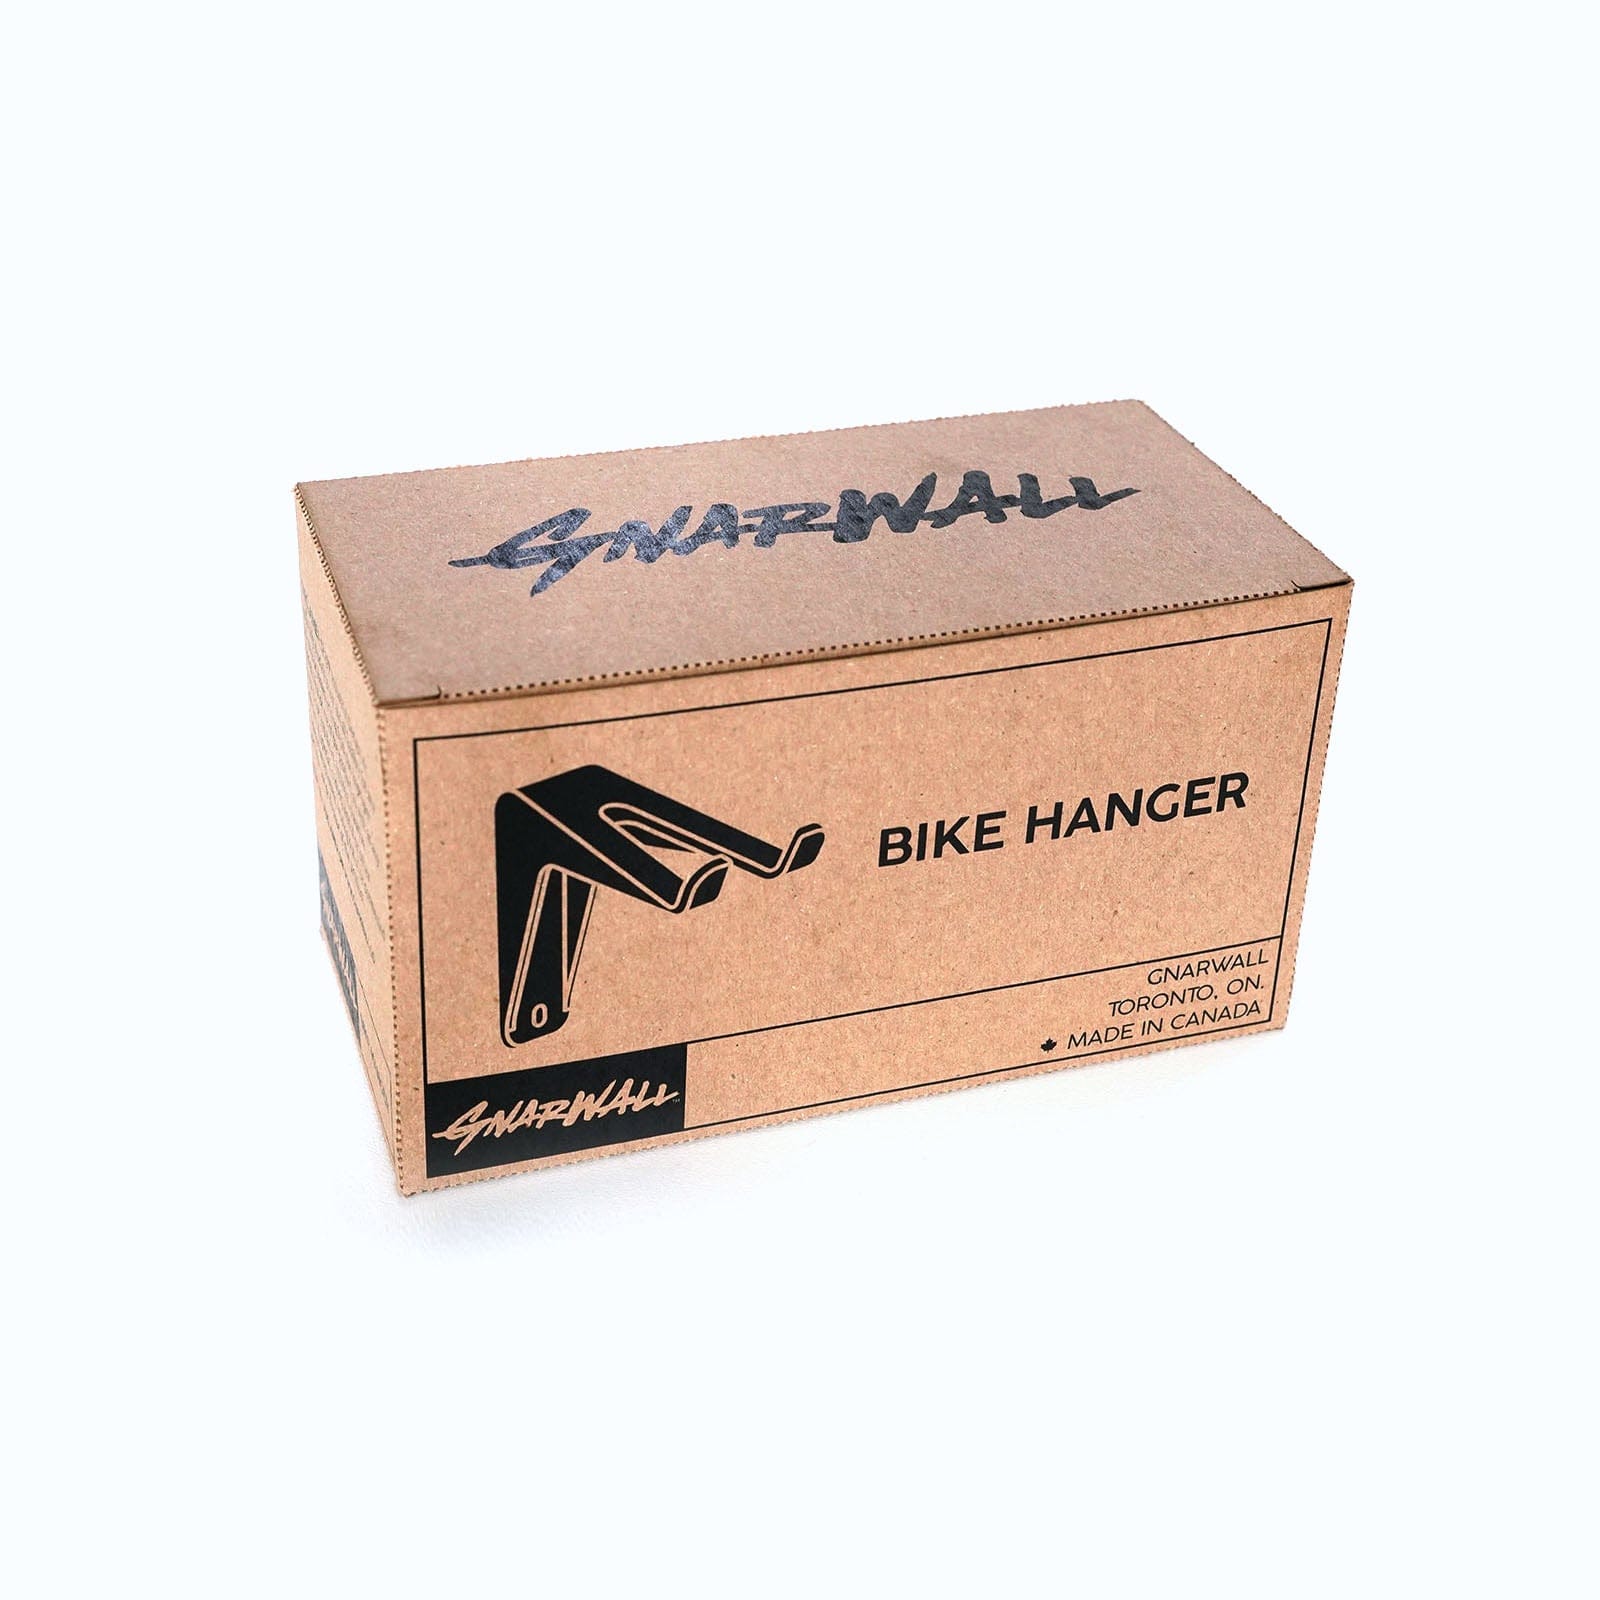 Black Gnarwall Bike Hanger - GNARWALL